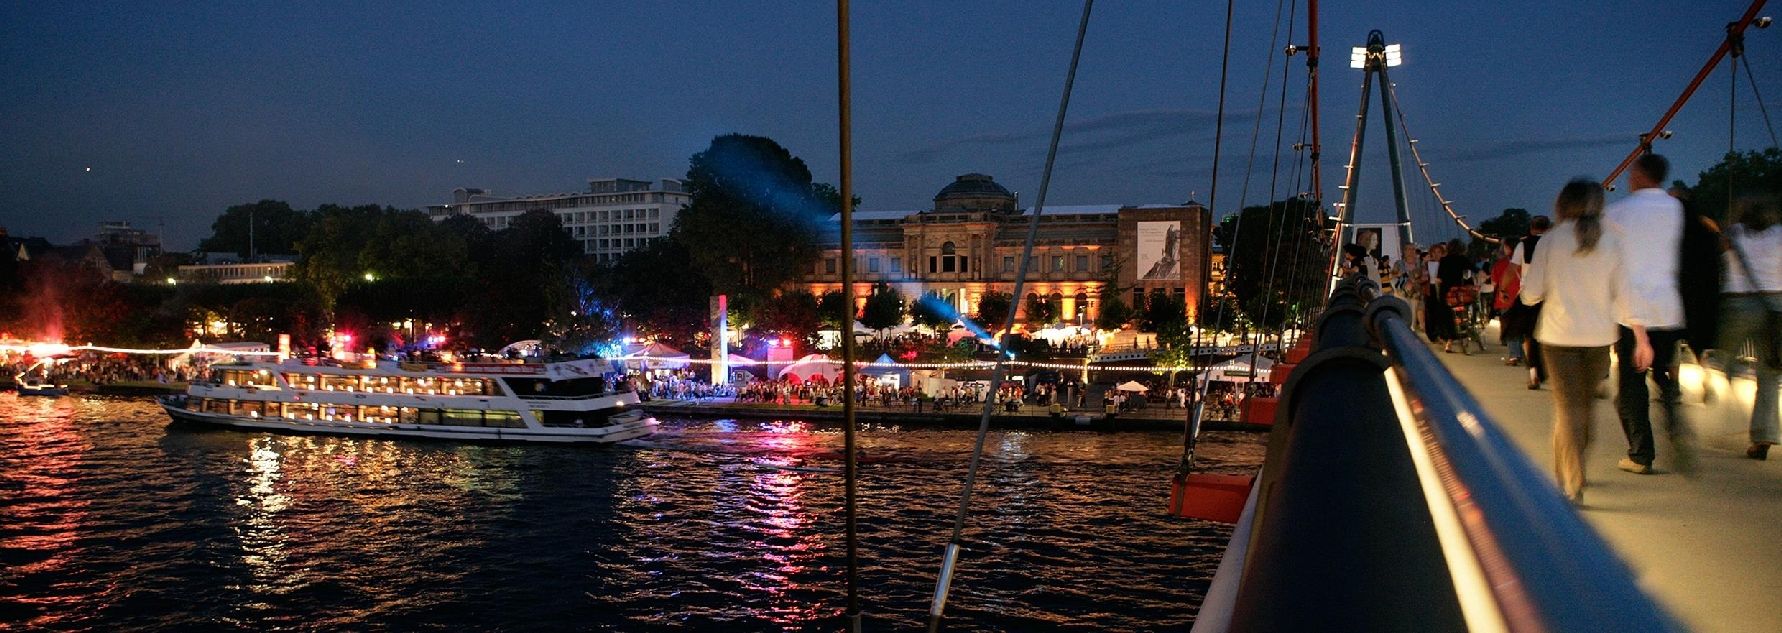 Mainufer von der Städelbrücke mit Fassade des Städel Museums, Schiff und Menschen im Hintergrund bei Nacht